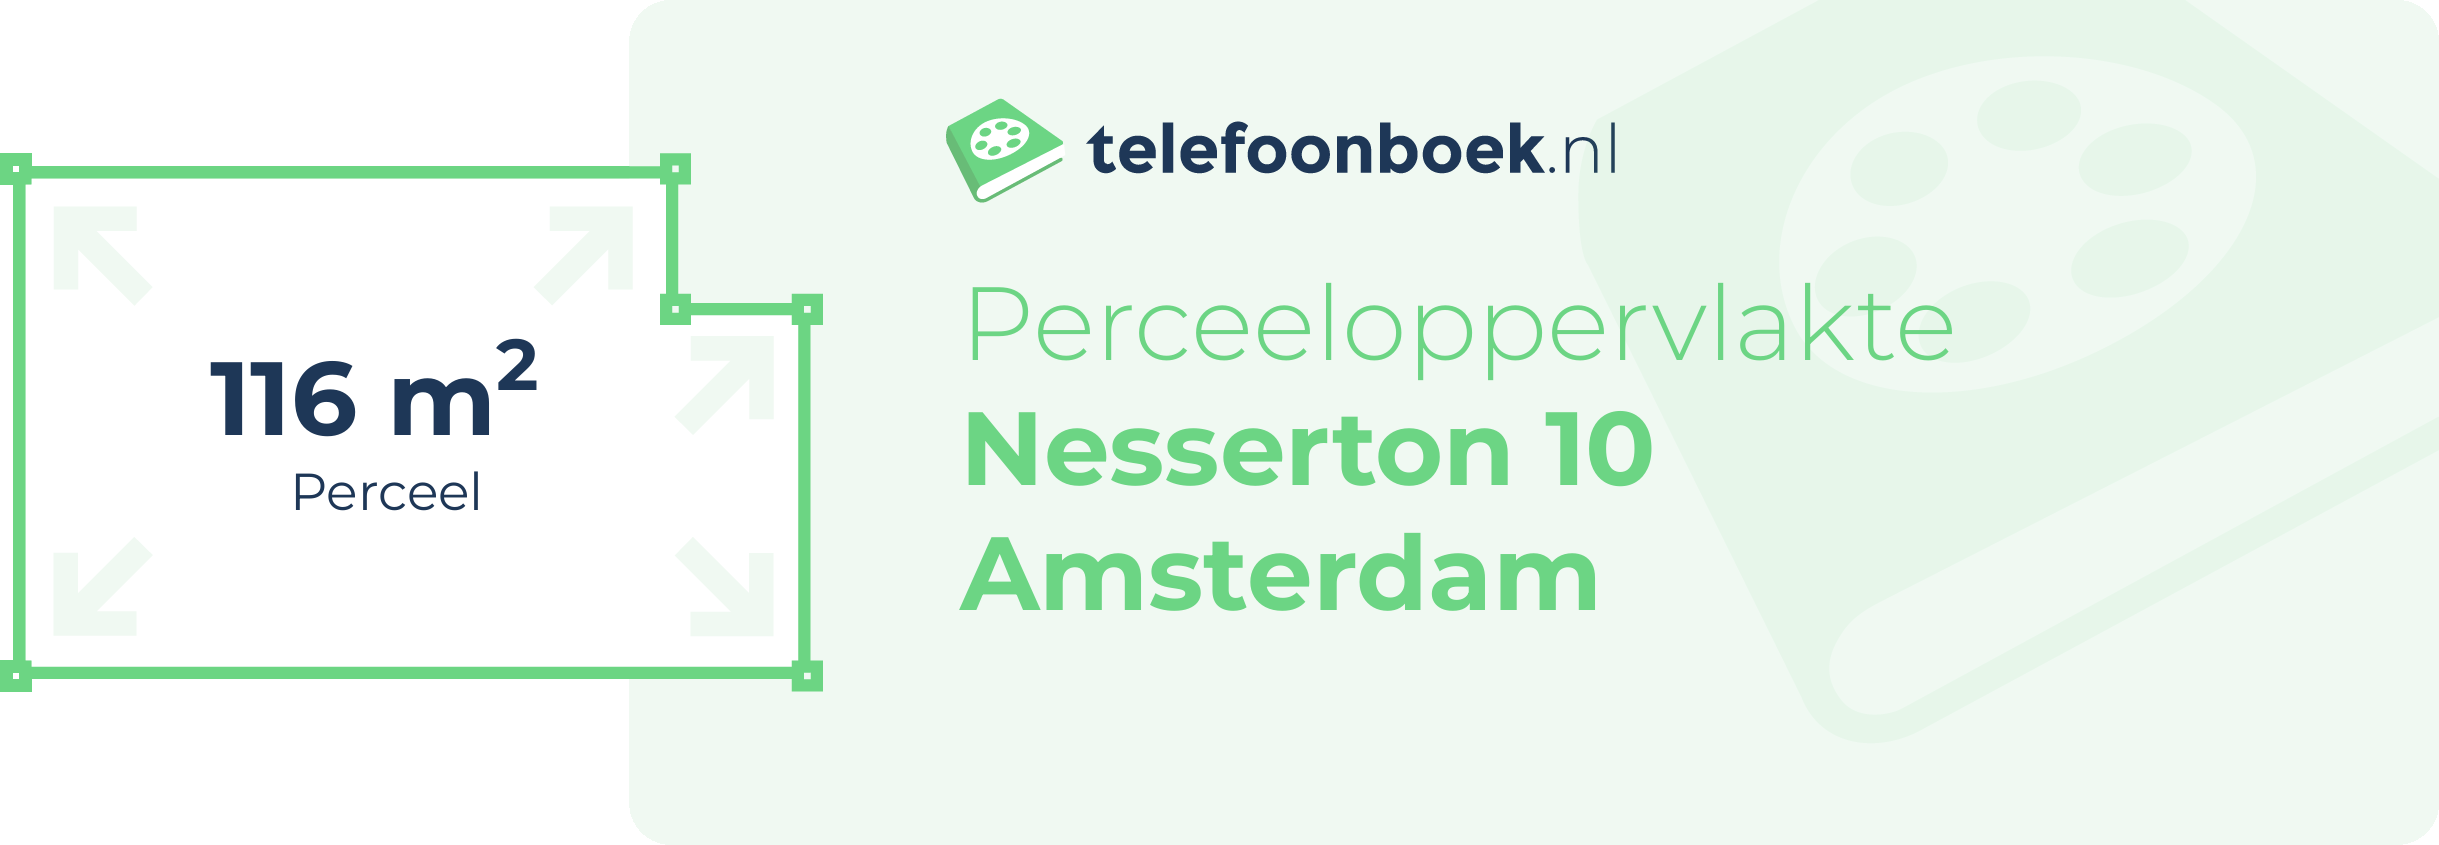 Perceeloppervlakte Nesserton 10 Amsterdam